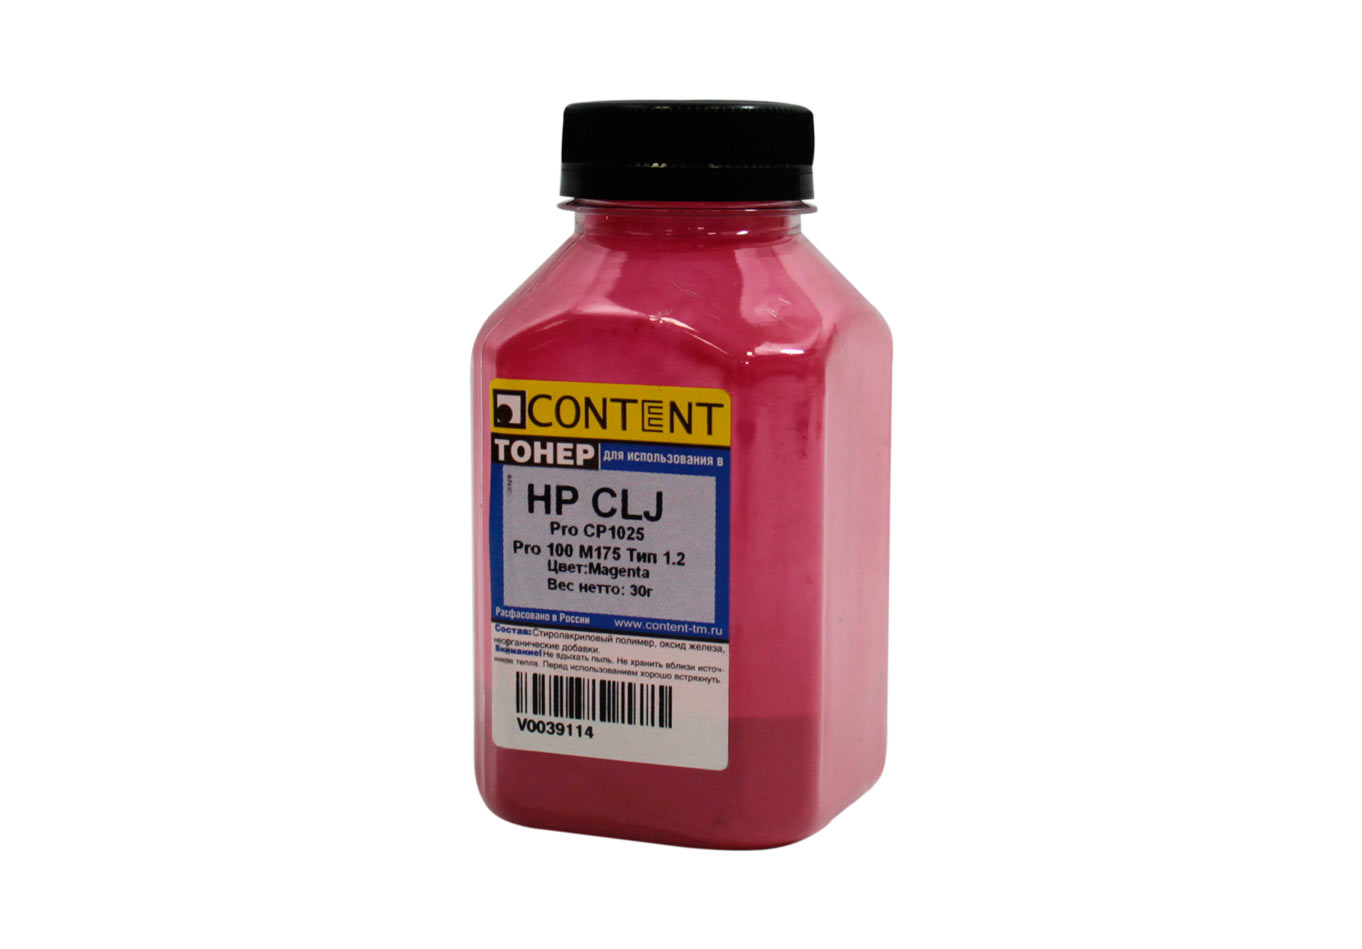 Тонер Content Тип 1.2, бутыль 30 г, пурпурный, совместимый для CLJ Pro CP1025, Pro 100 M175 (V0039114)